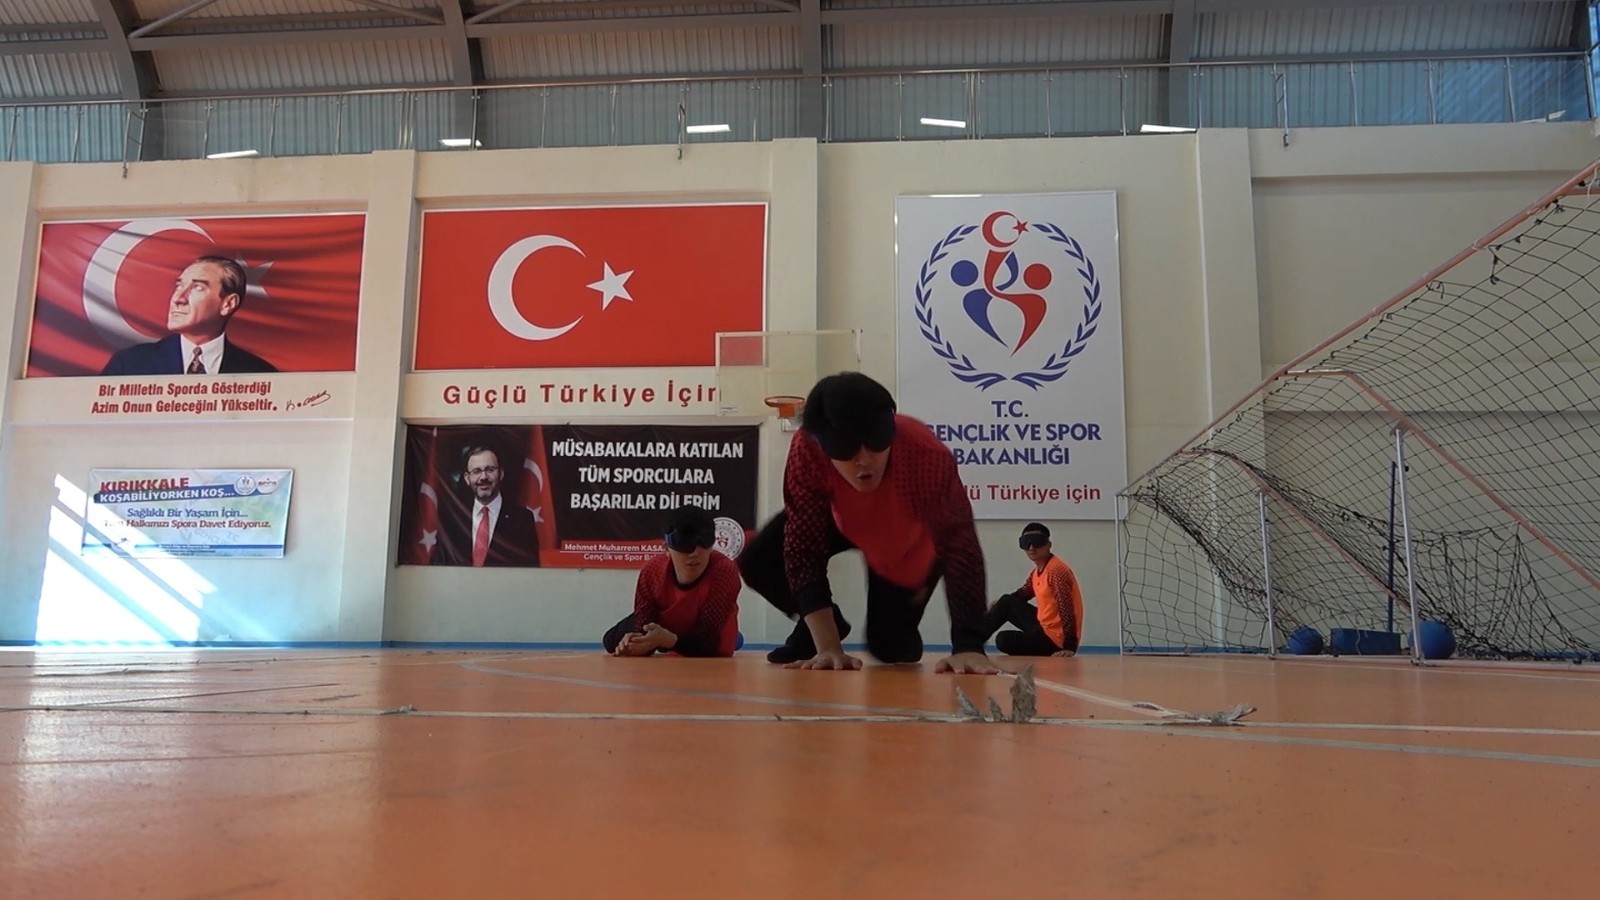 60e4431eb31a7-Kazakistan Goalball Milli Takımı, Kırıkkale’de kamp yaptı.jpg